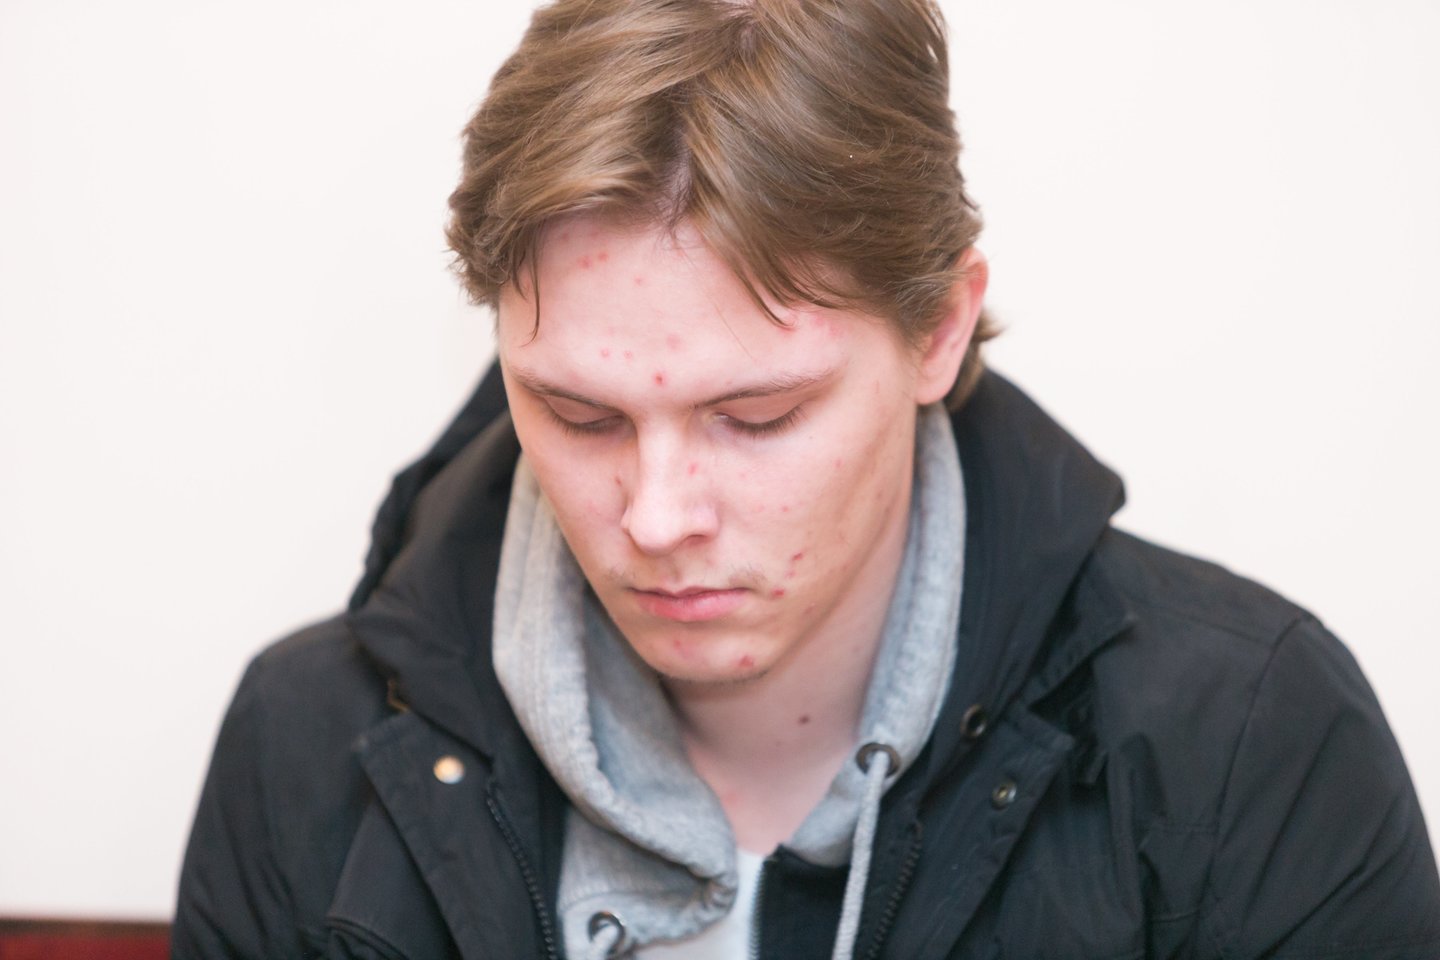 Vilniaus apygardos teismas penktadienį sprendžia dėl kardomosios priemonės – suėmimo – pratęsimo teroro aktą Vilniuje įvykdyti pasikėsinusiam studentui. <br>T.Bauro nuotr.